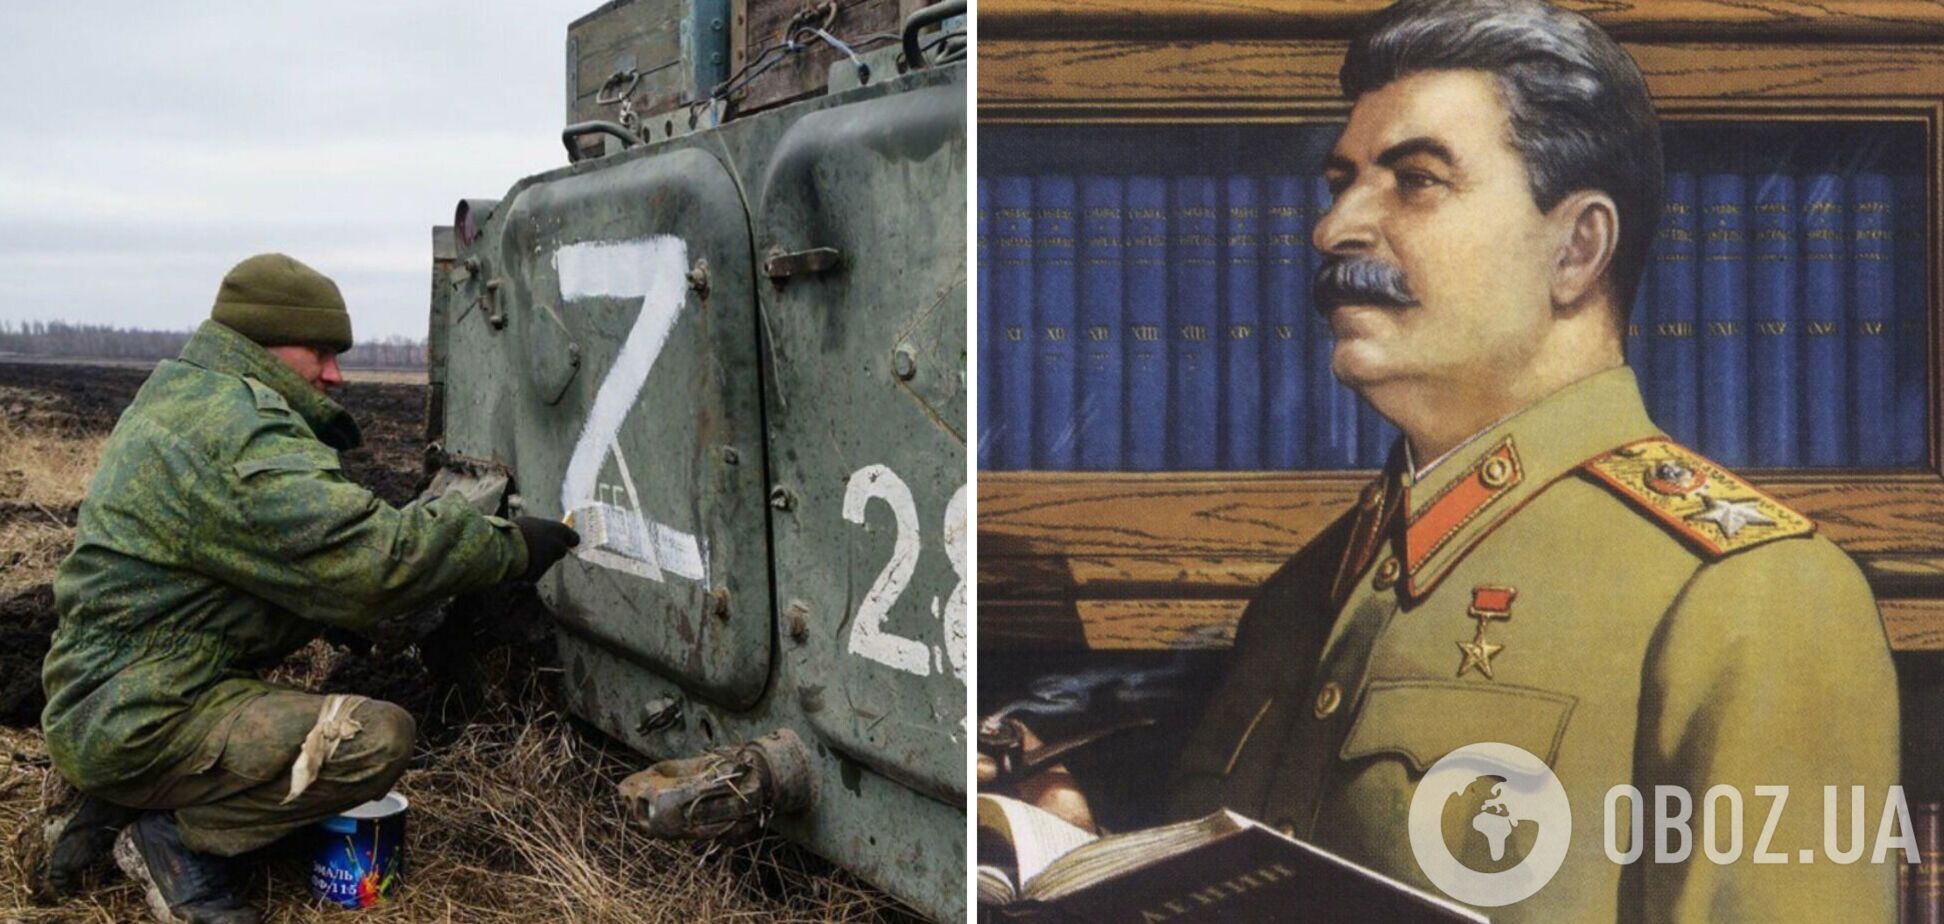 Російські пропагандисти заявили, що символ Z придумав Сталін в 1941 році: насправді ним позначено абзац. Відео